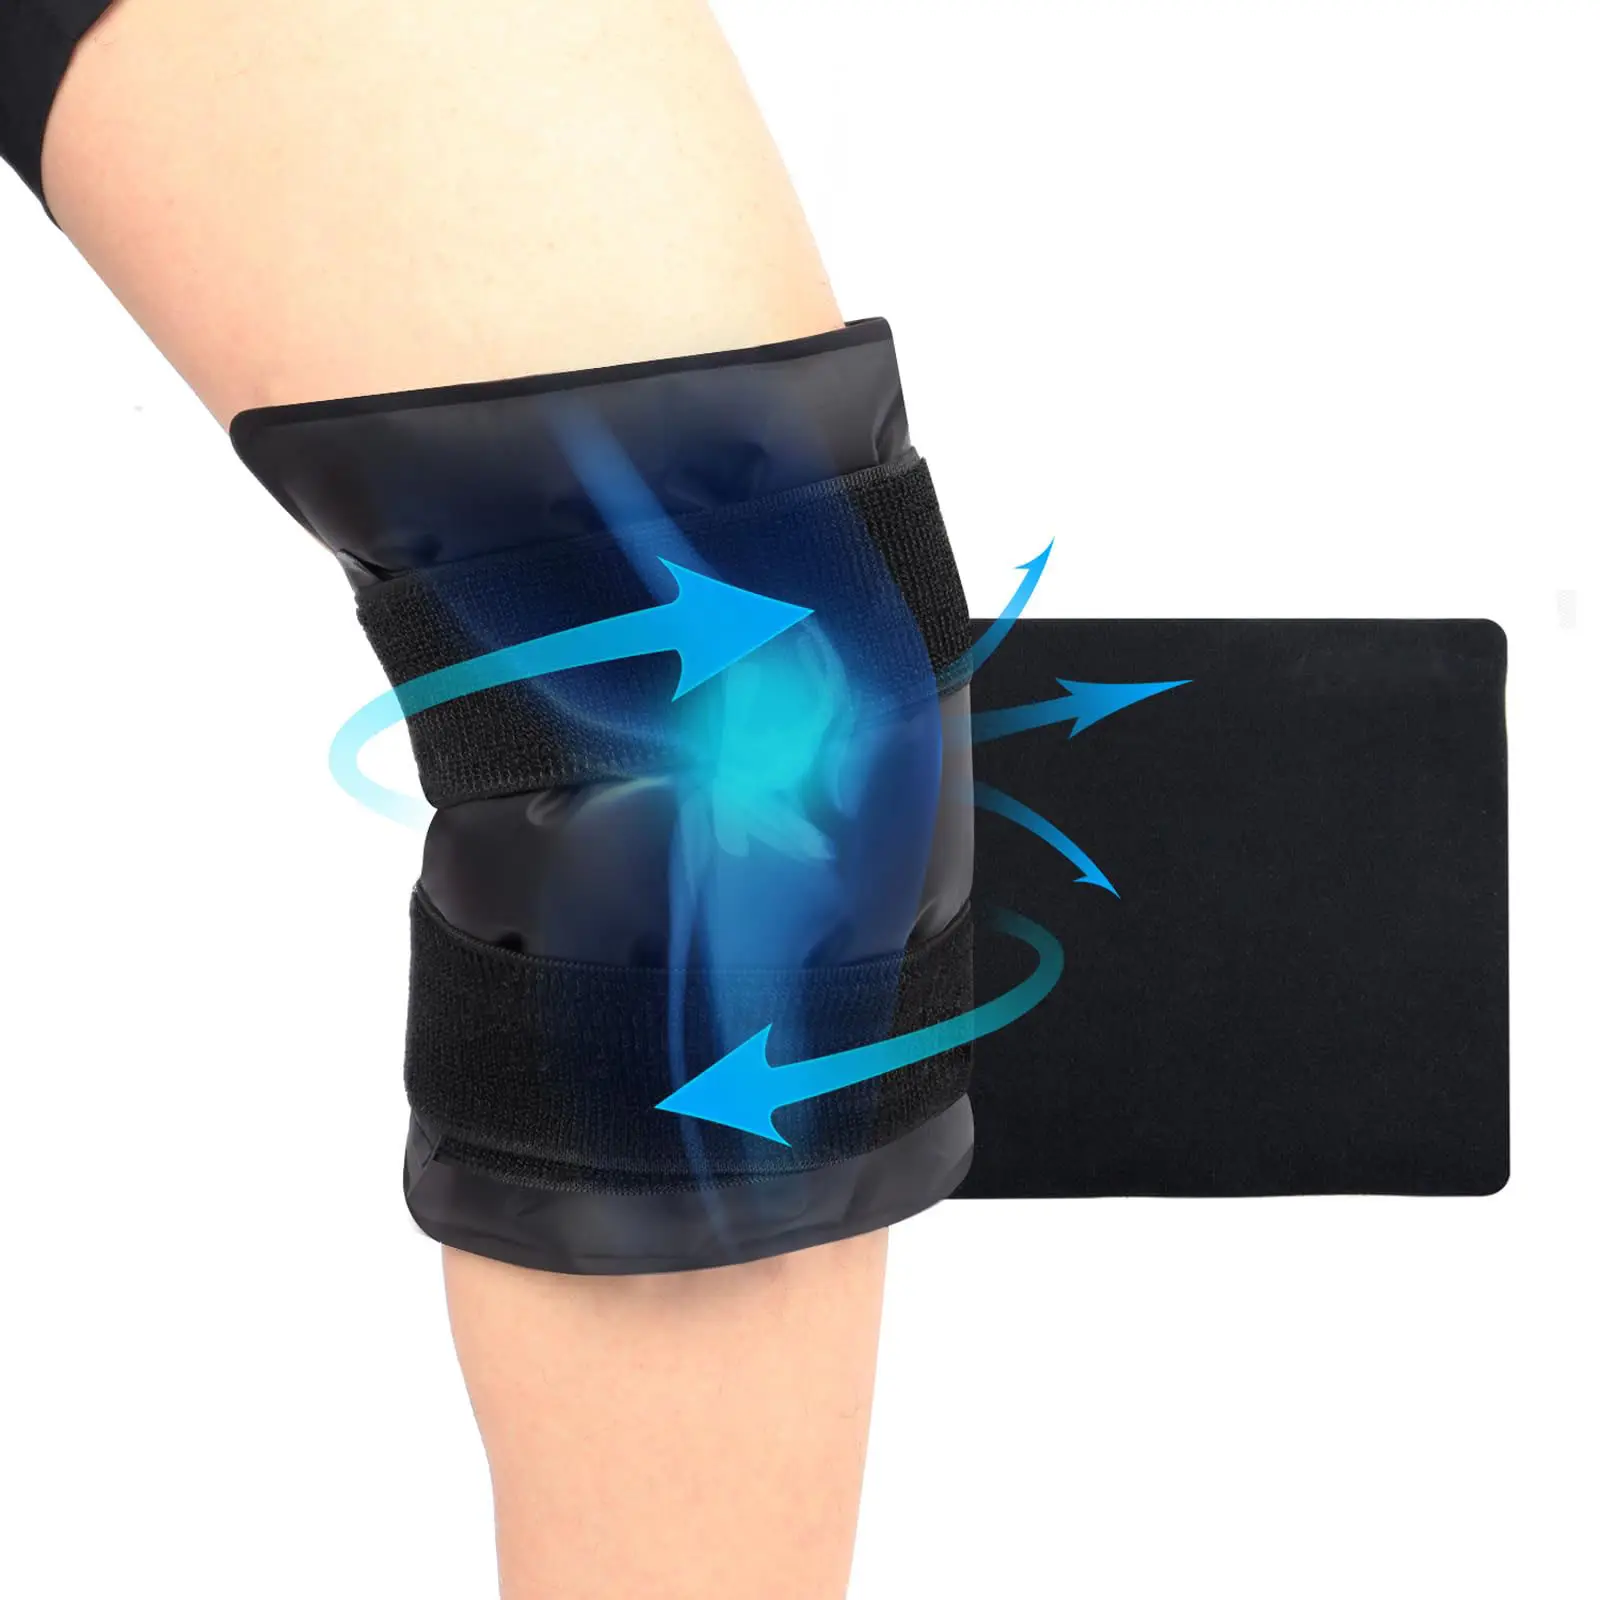 큰 무릎 보호대 아이스 백으로 무릎 주위의 통증을 완화시킬 수 있습니다. 재사용 가능한 핫 및 콜드 트리트먼트 젤 패드